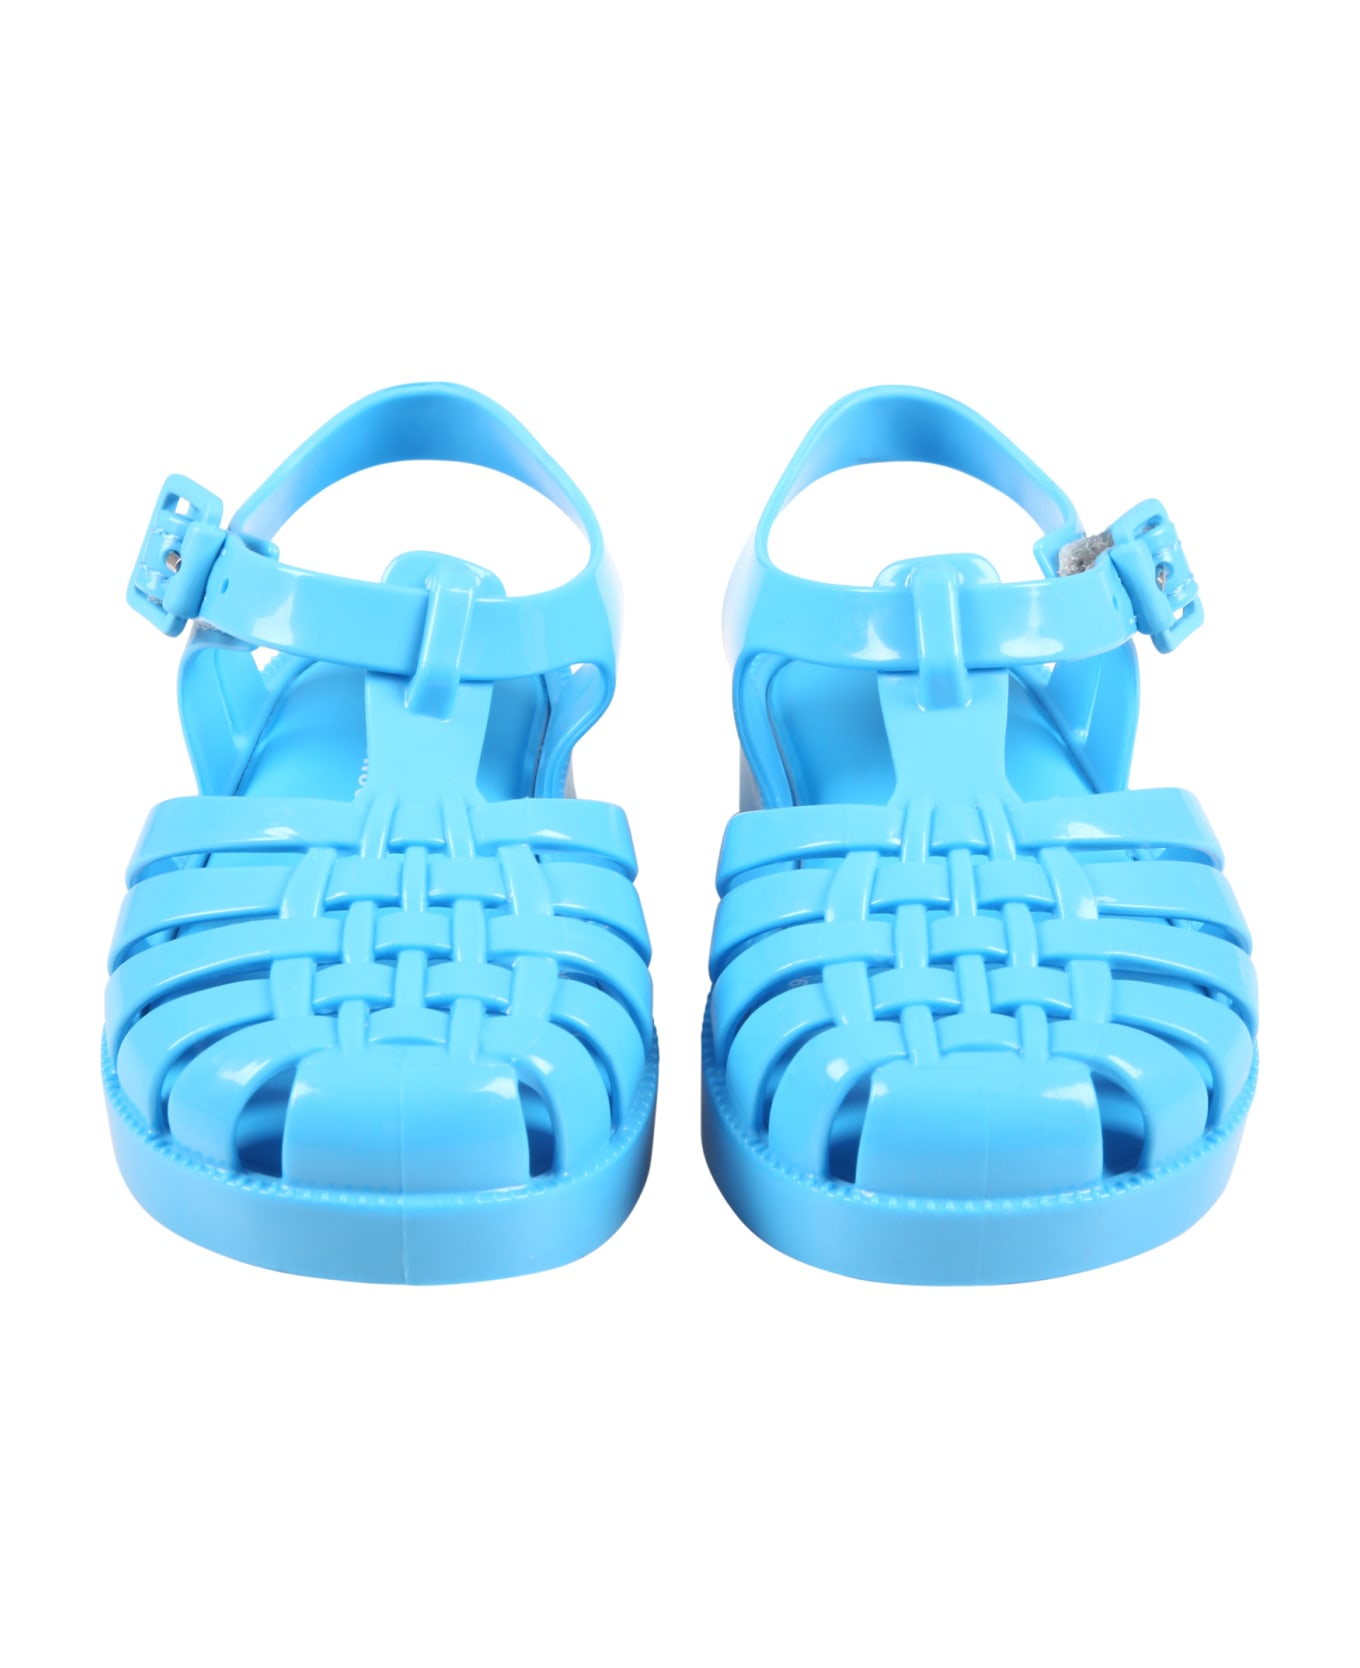 Melissa Azure Sandals For Kids - Light Blue シューズ